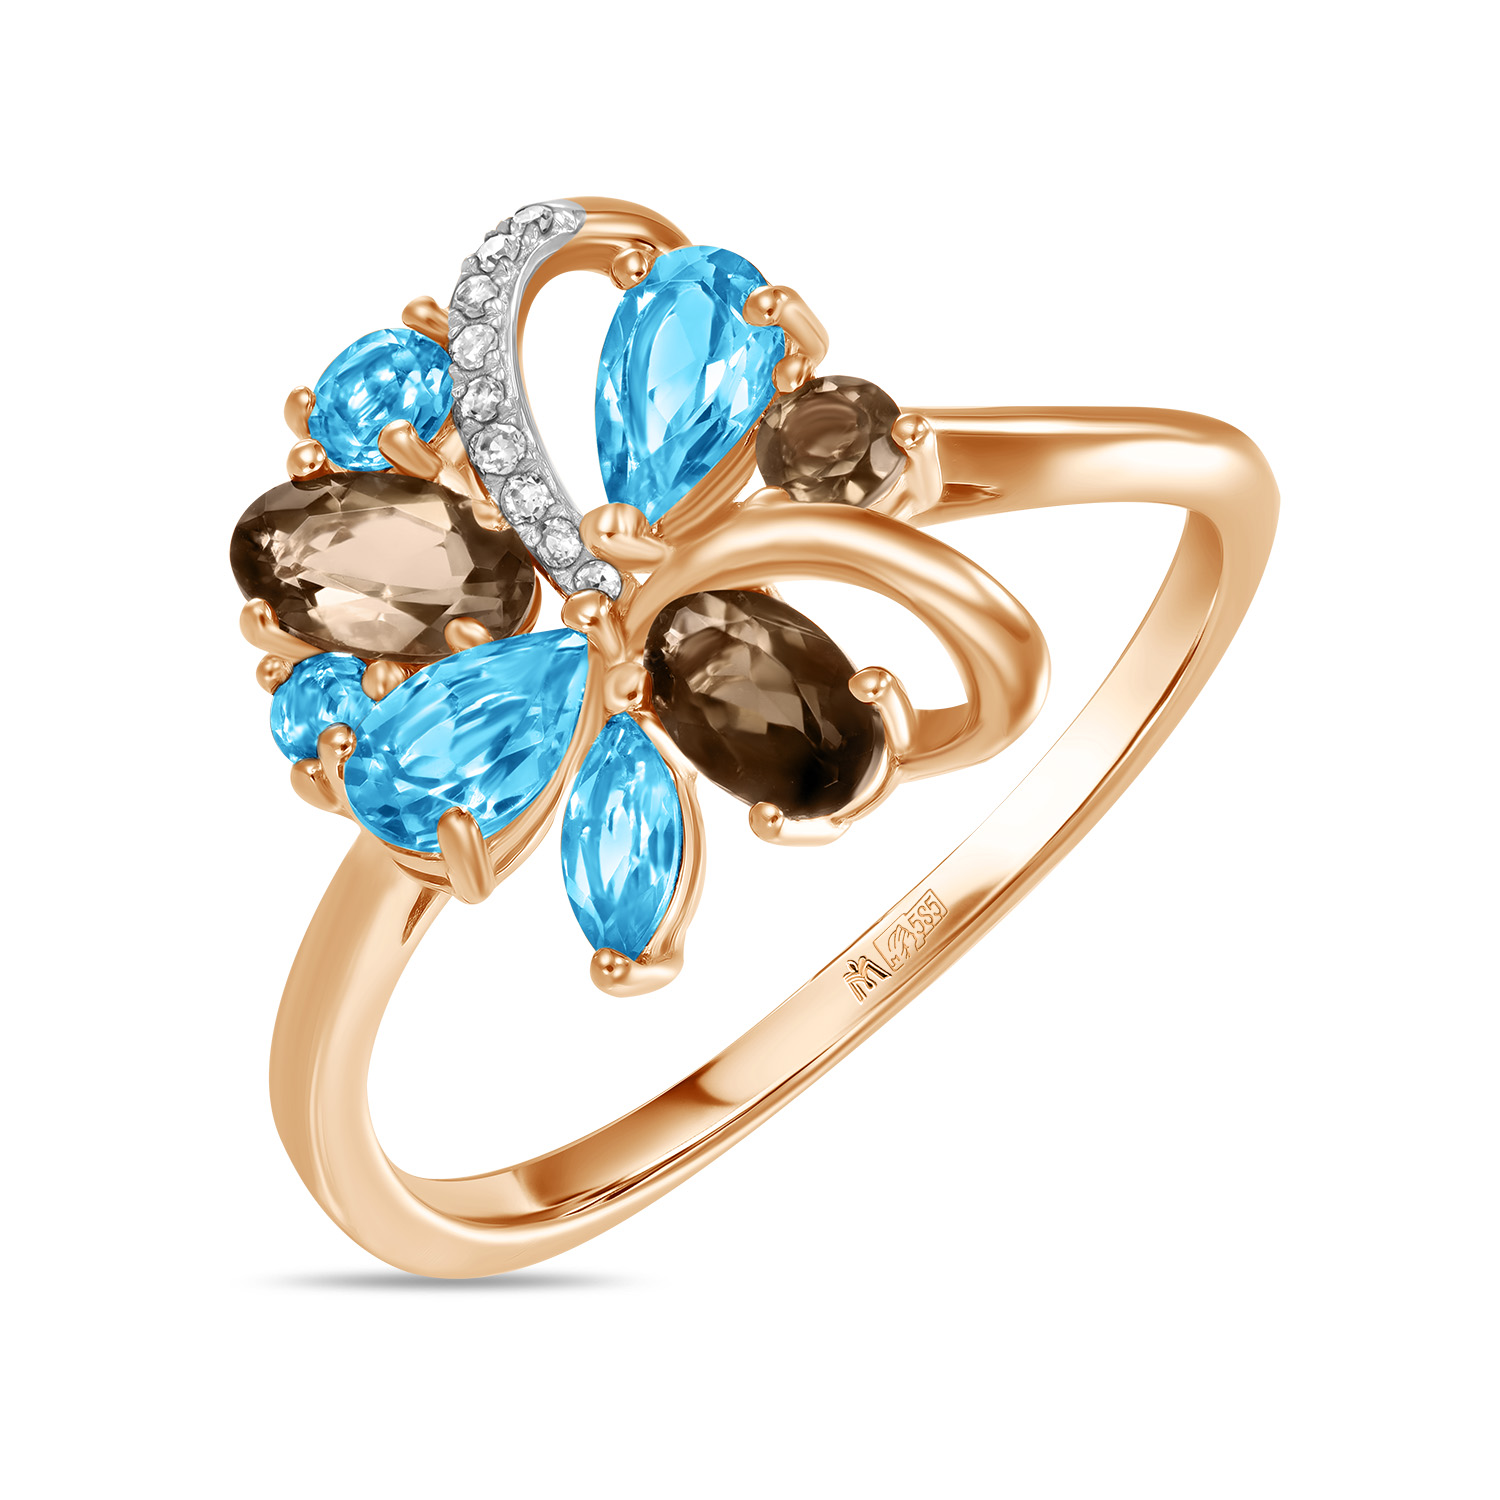 Кольца МЮЗ Золотое кольцо с топазом, бриллиантами и кварцем кольца мюз золотое кольцо с топазом бриллиантами и кварцем